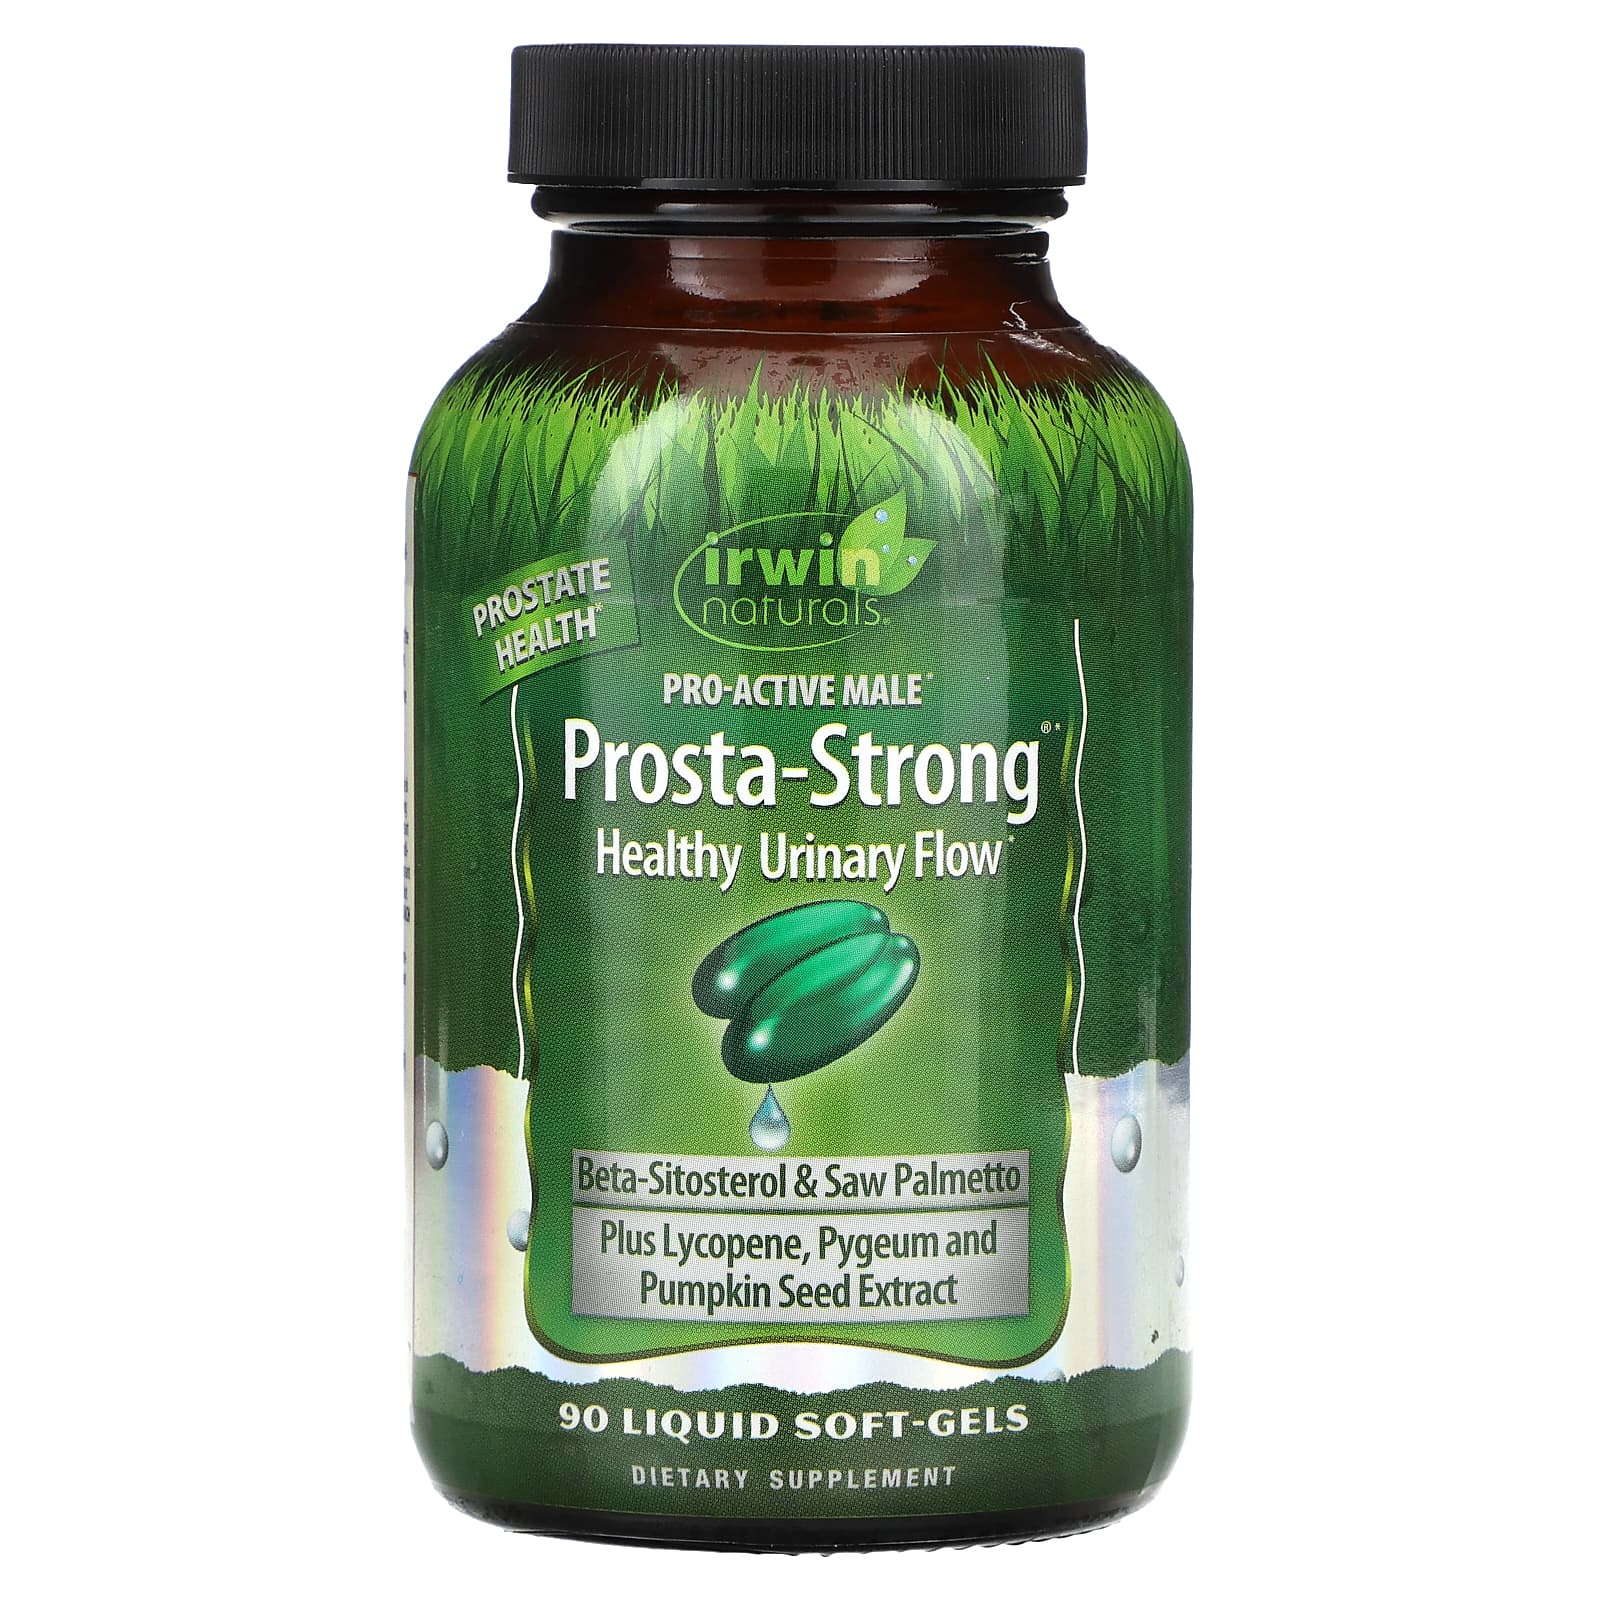 Irwin Naturals Prosta-Strong 90 мягких желатиновых капсул с жидкостью irwin naturals estropause поддержка в период менопаузы 80 мягких желатиновых капсул с жидкостью